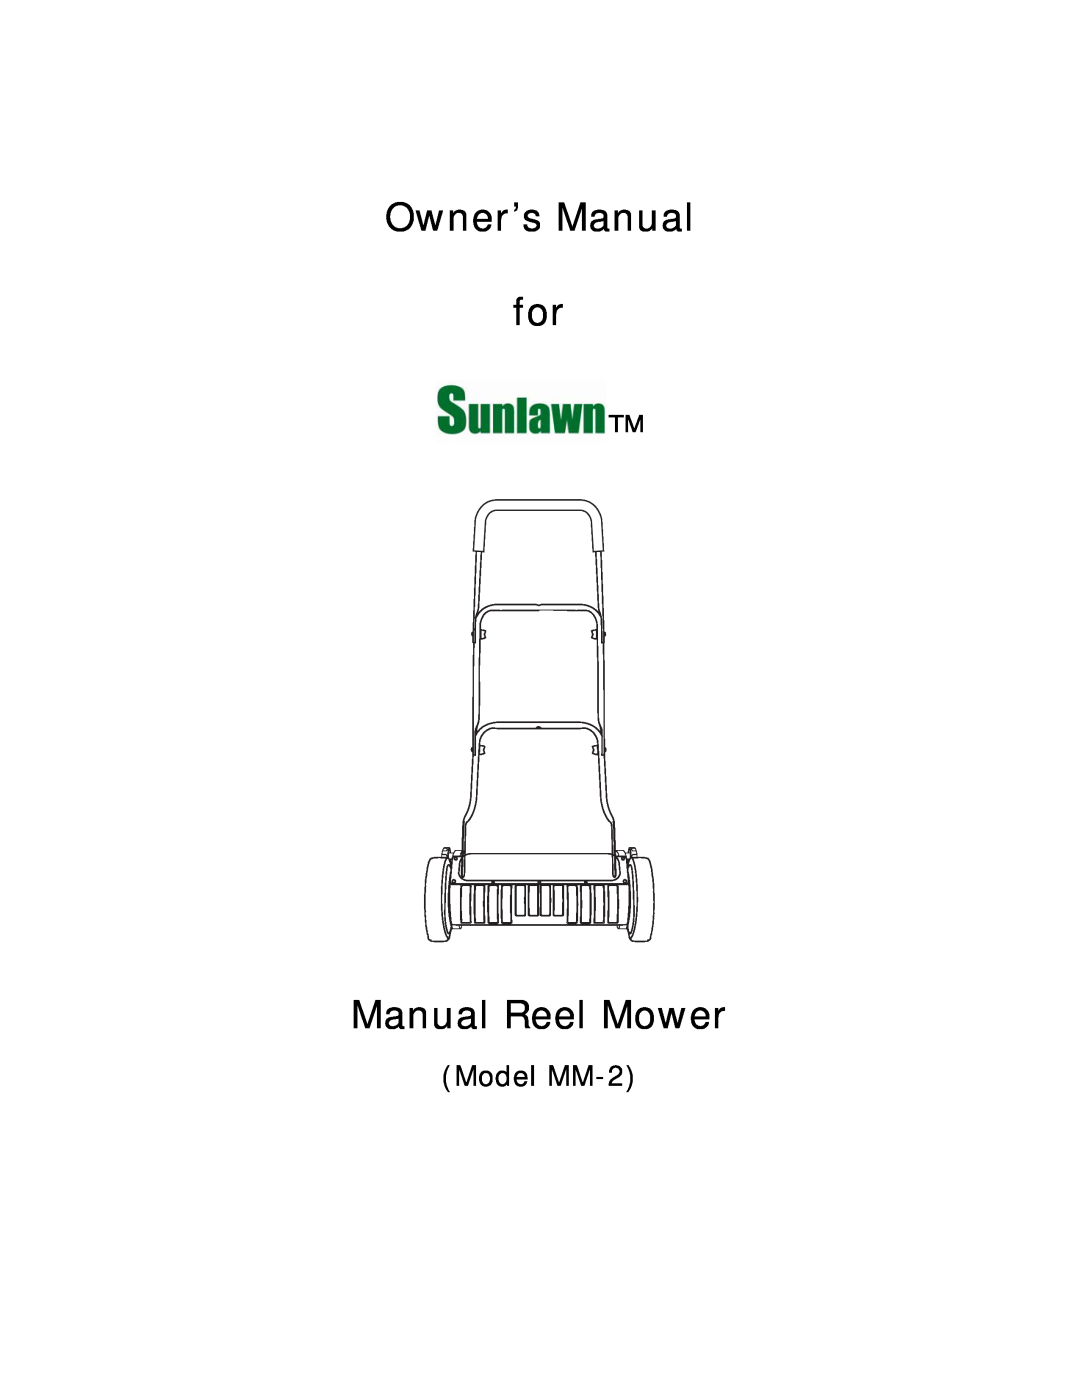 Sun Lawn owner manual Manual Reel Mower, Model MM-2 